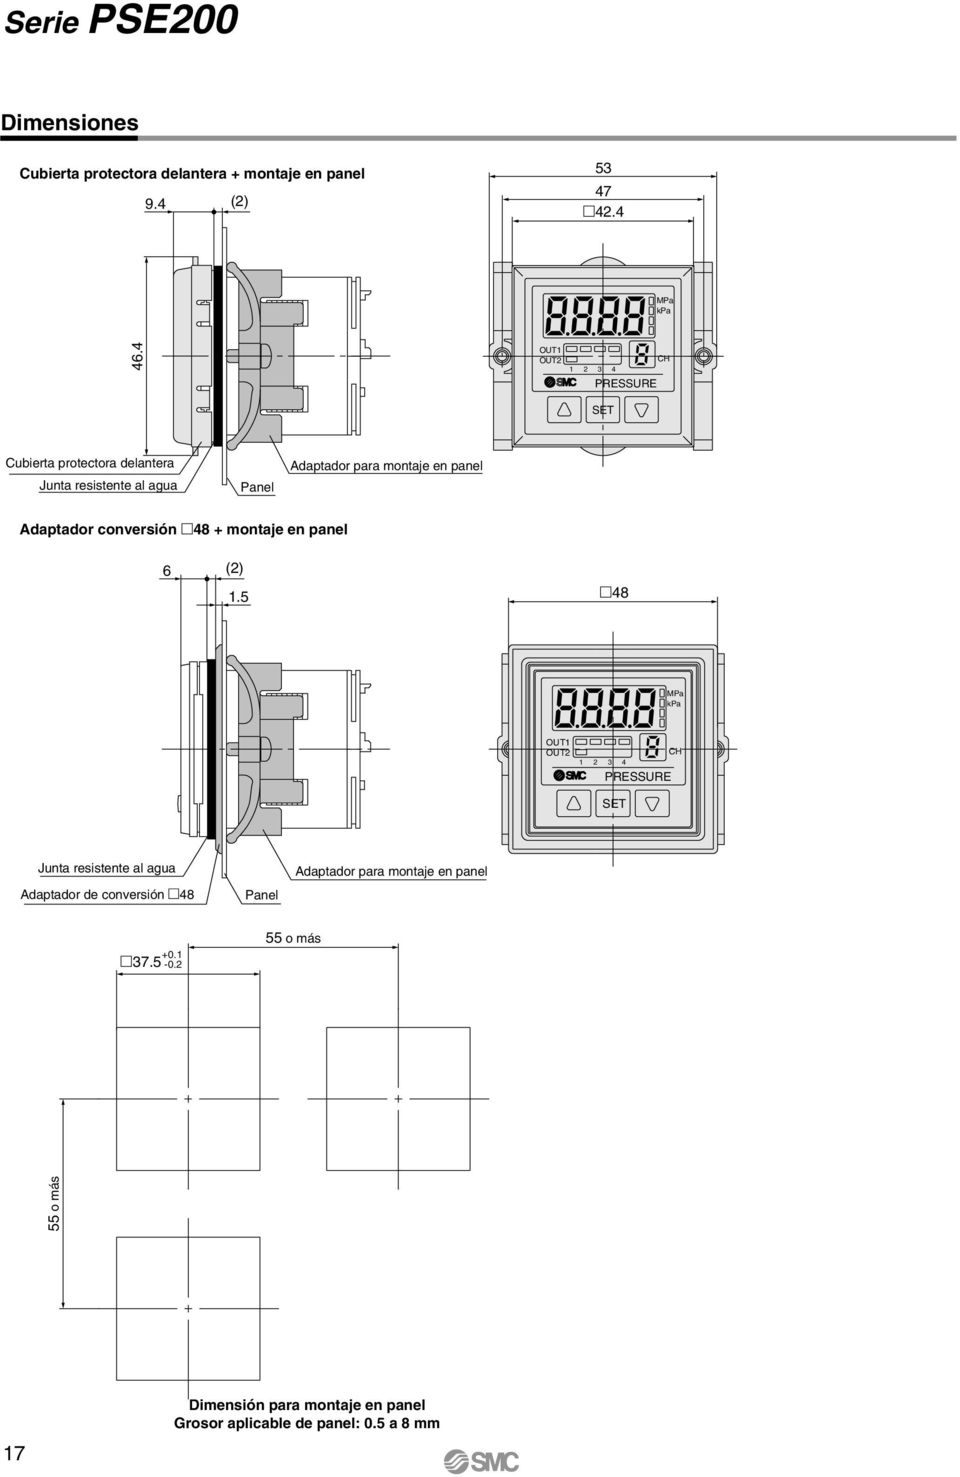 daptador conversión 48 + montaje en panel 6 (2) 1.